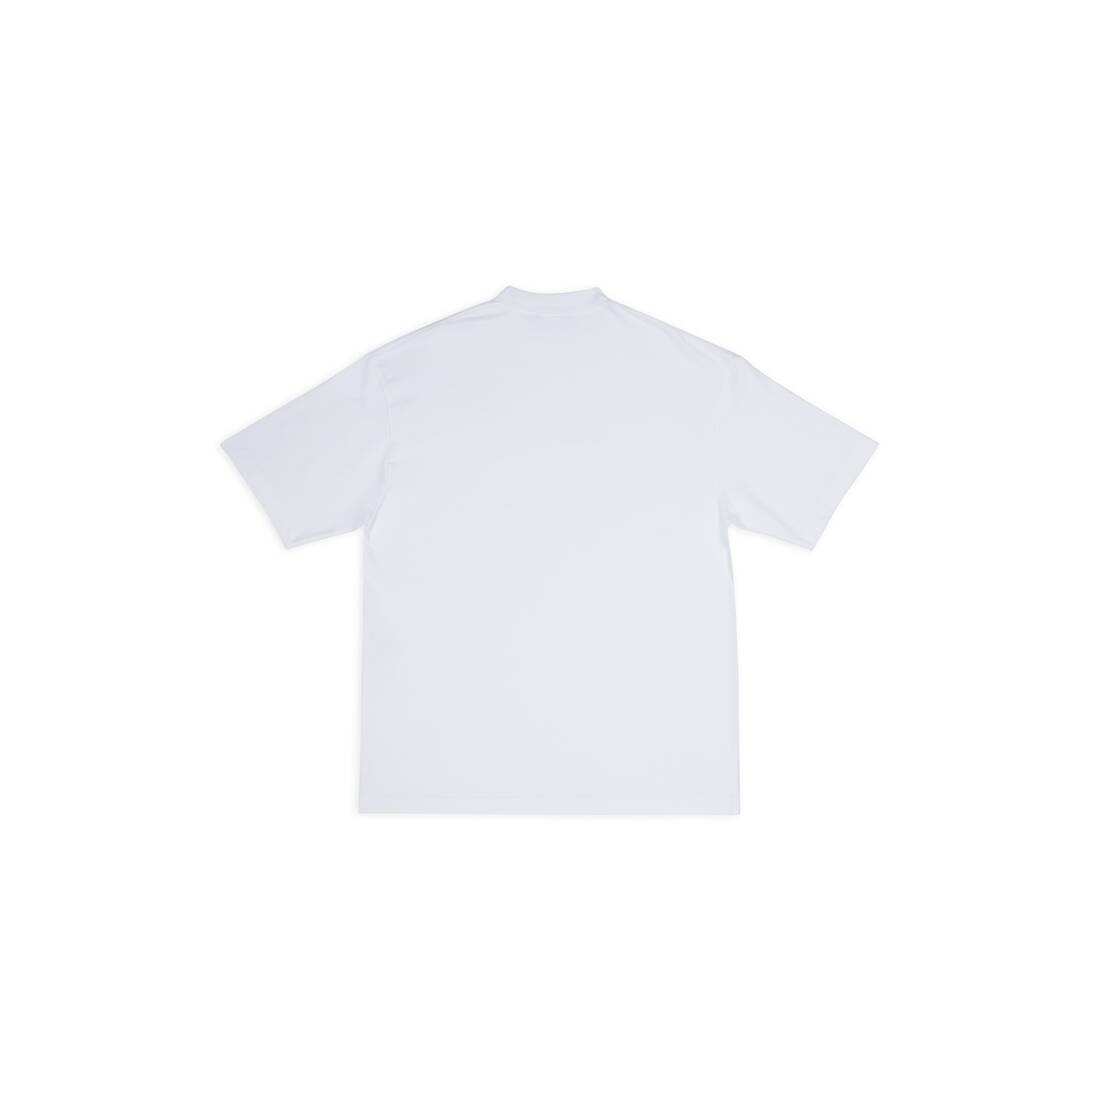 Men's Cities Paris T-shirt Medium Fit in White - 2